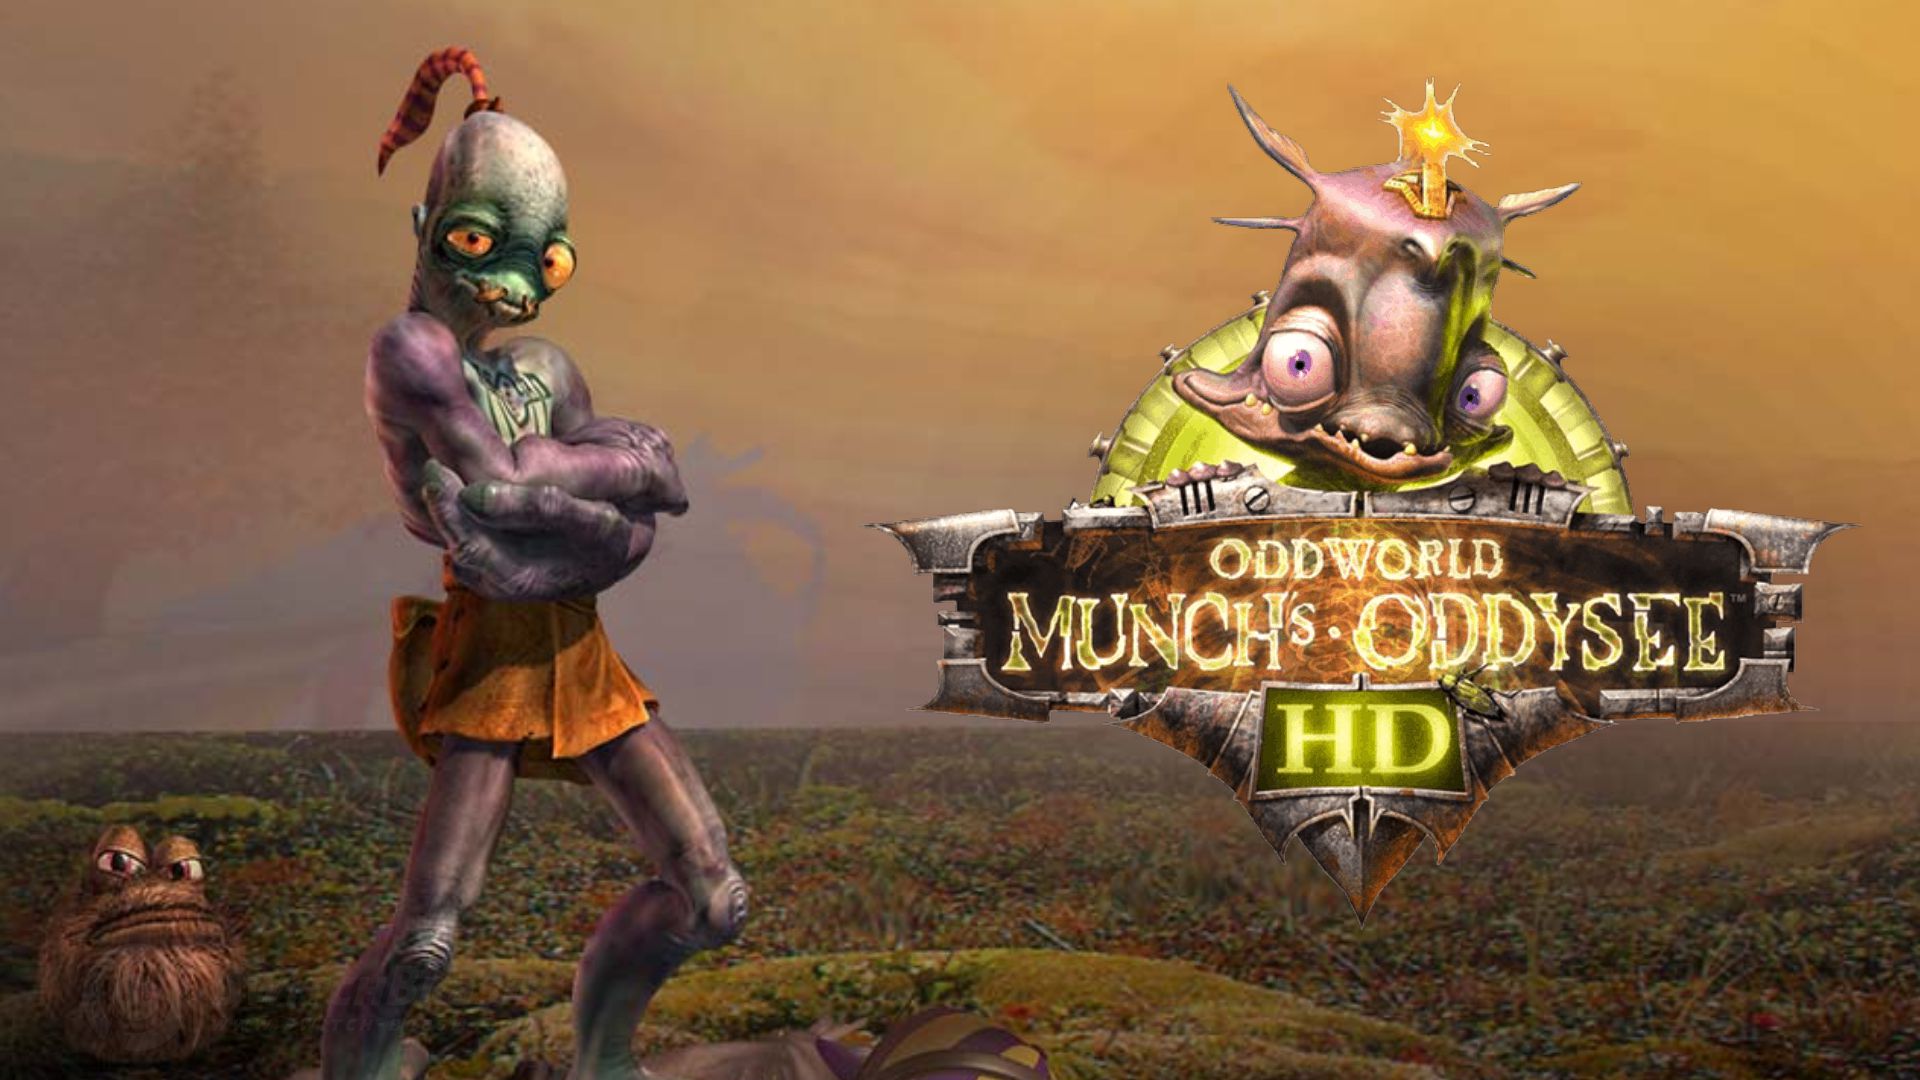 Oddworld hd steam фото 54